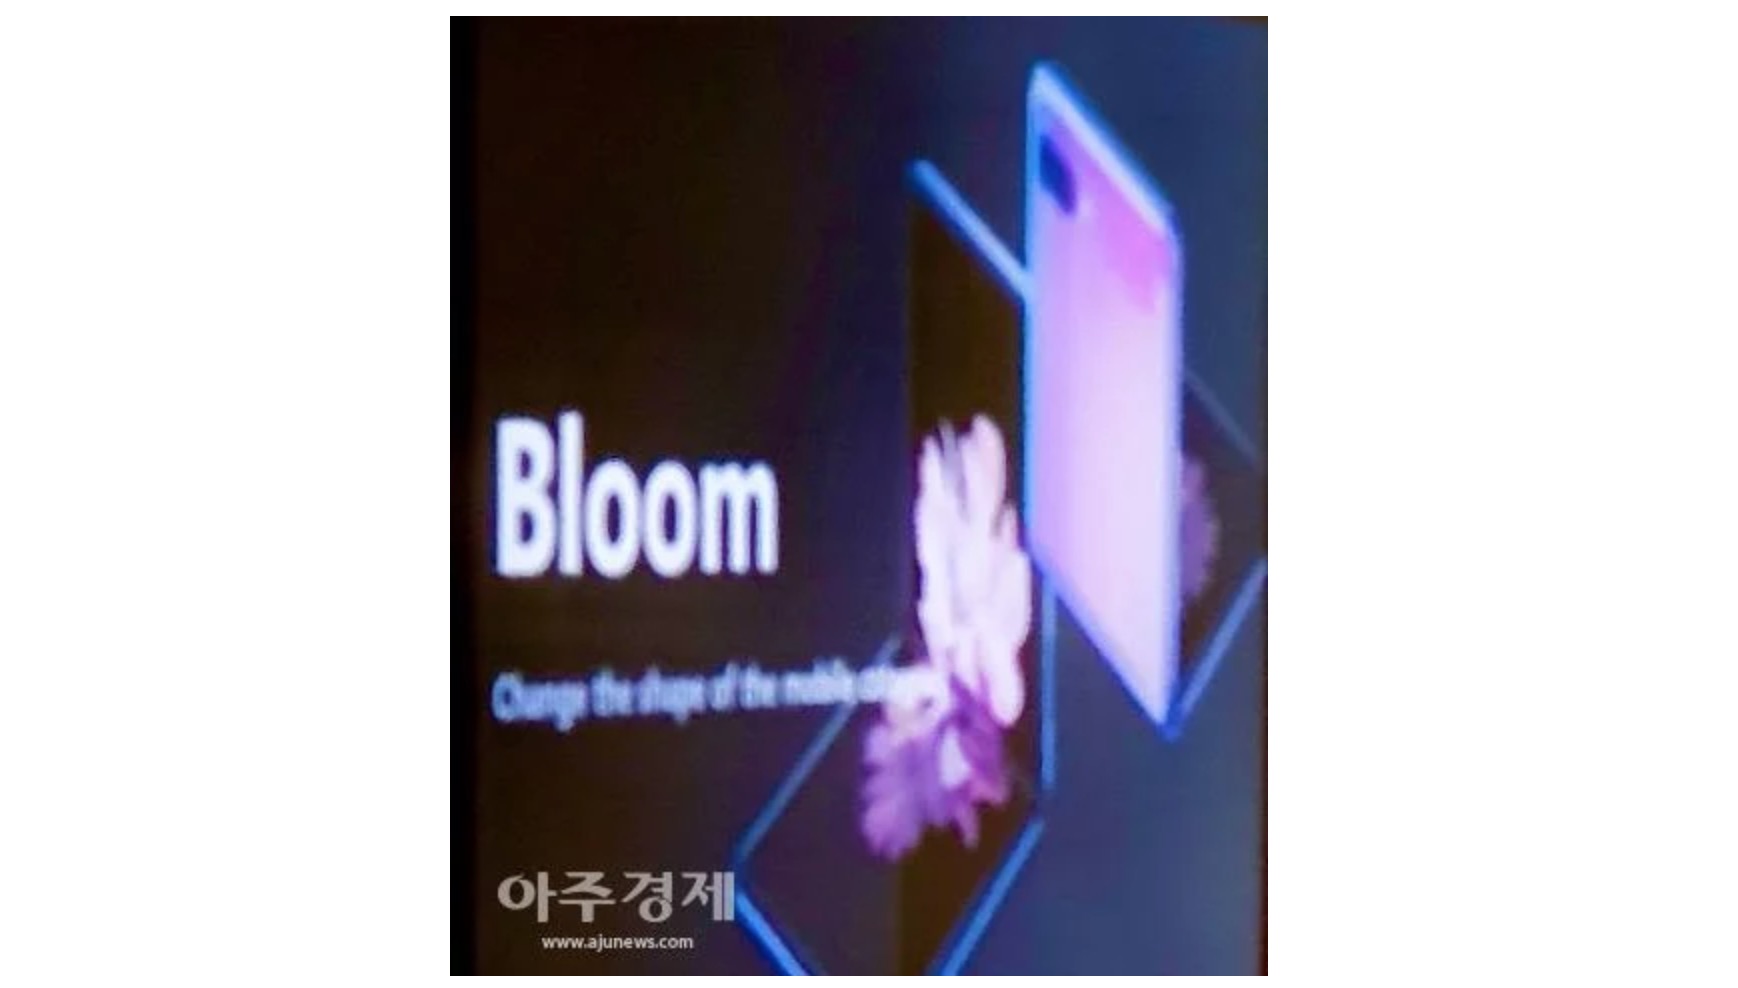 Galaxy Fold 2 sẽ có
tên là Galaxy Bloom, thiết kế lấy cảm hứng từ hộp phấn trang
điểm